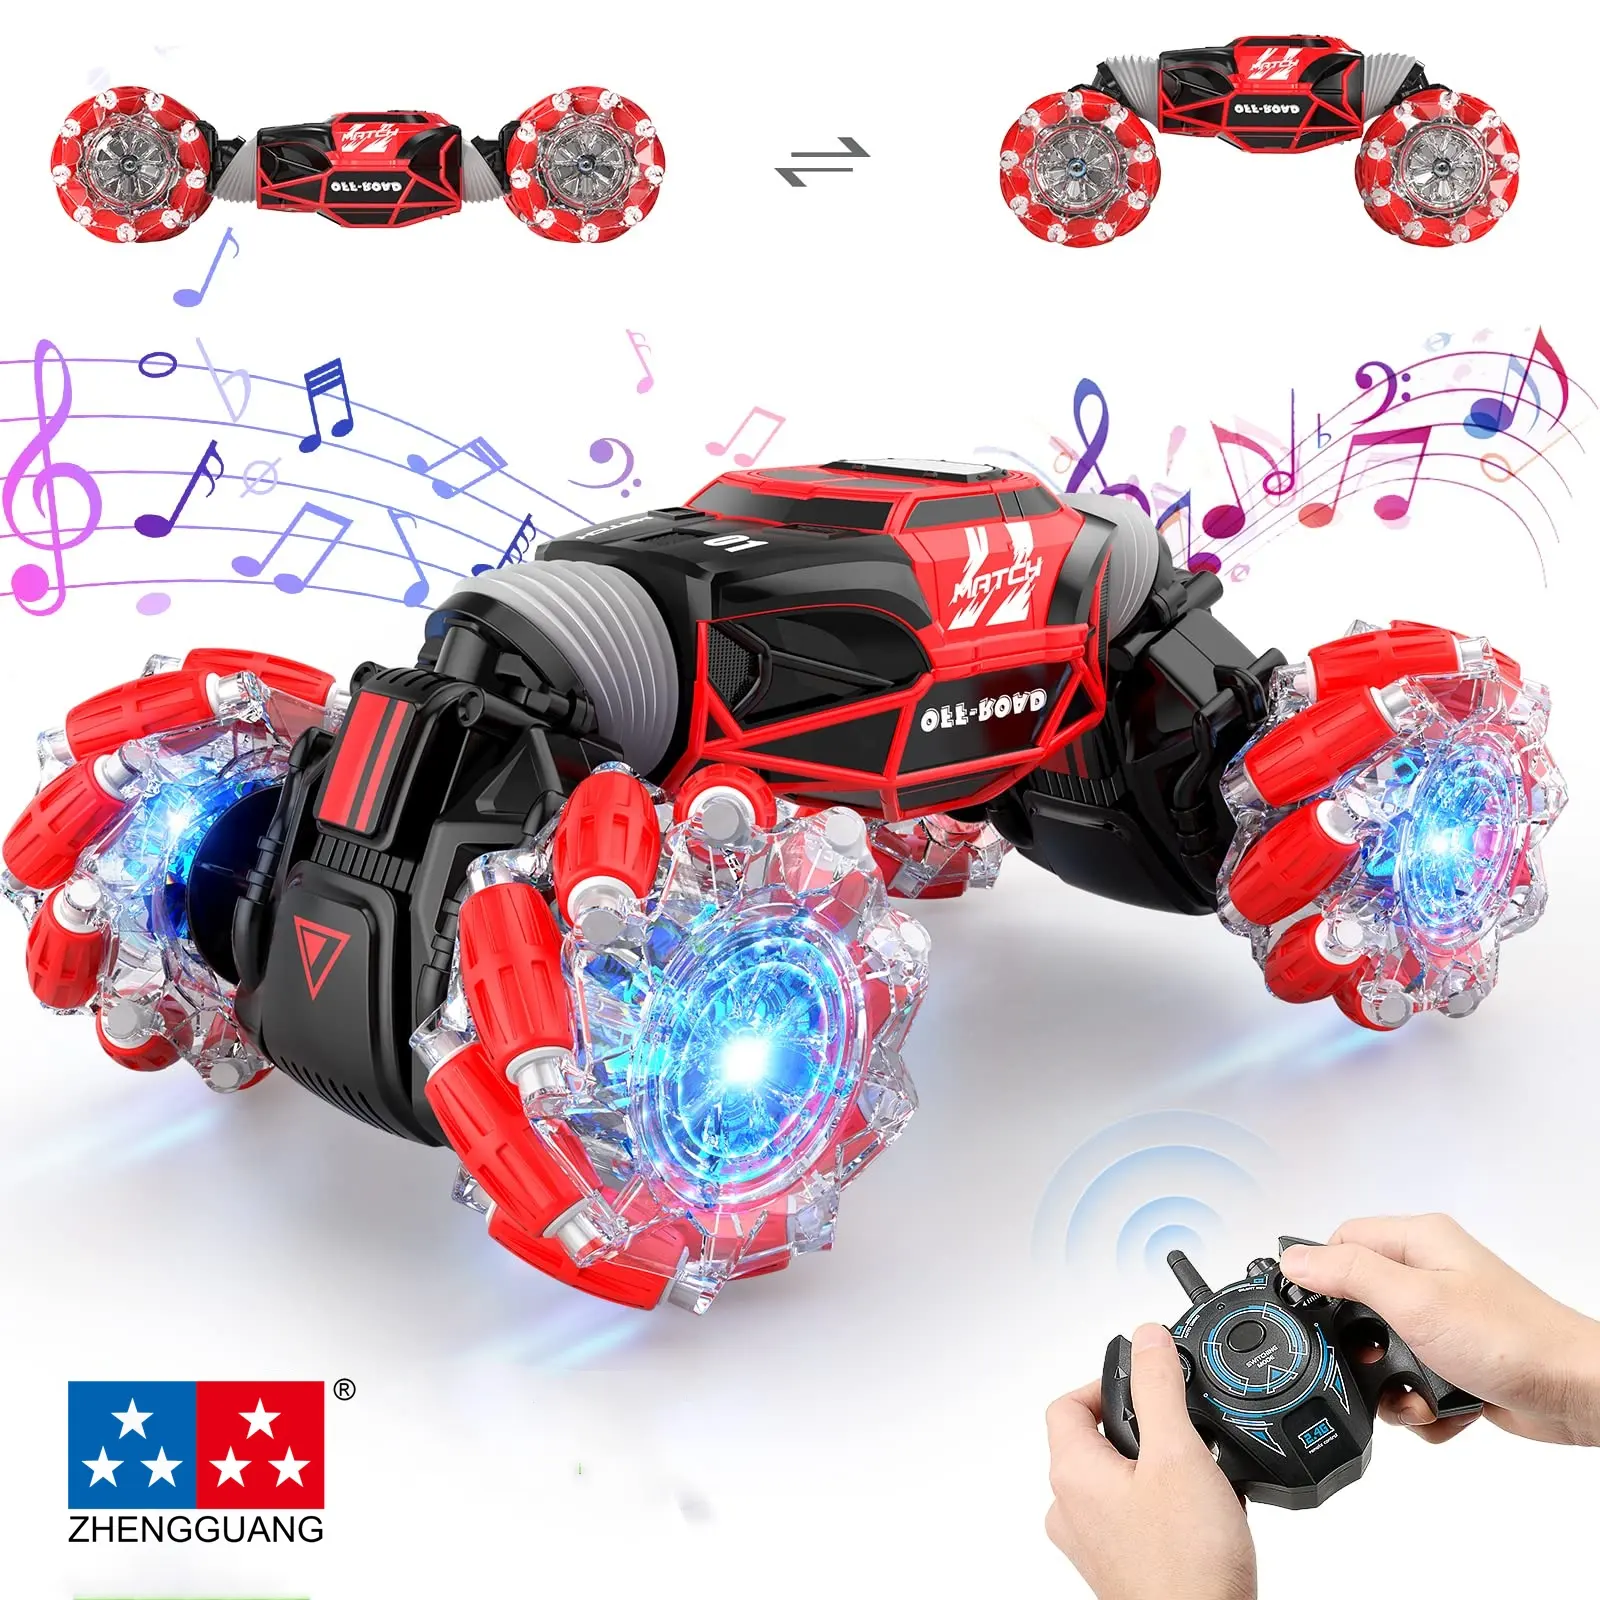 Zhenguang-coche acrobático teledirigido de doble Control remoto para niños, juguete de coche infantil con Control de gestos, música y luz